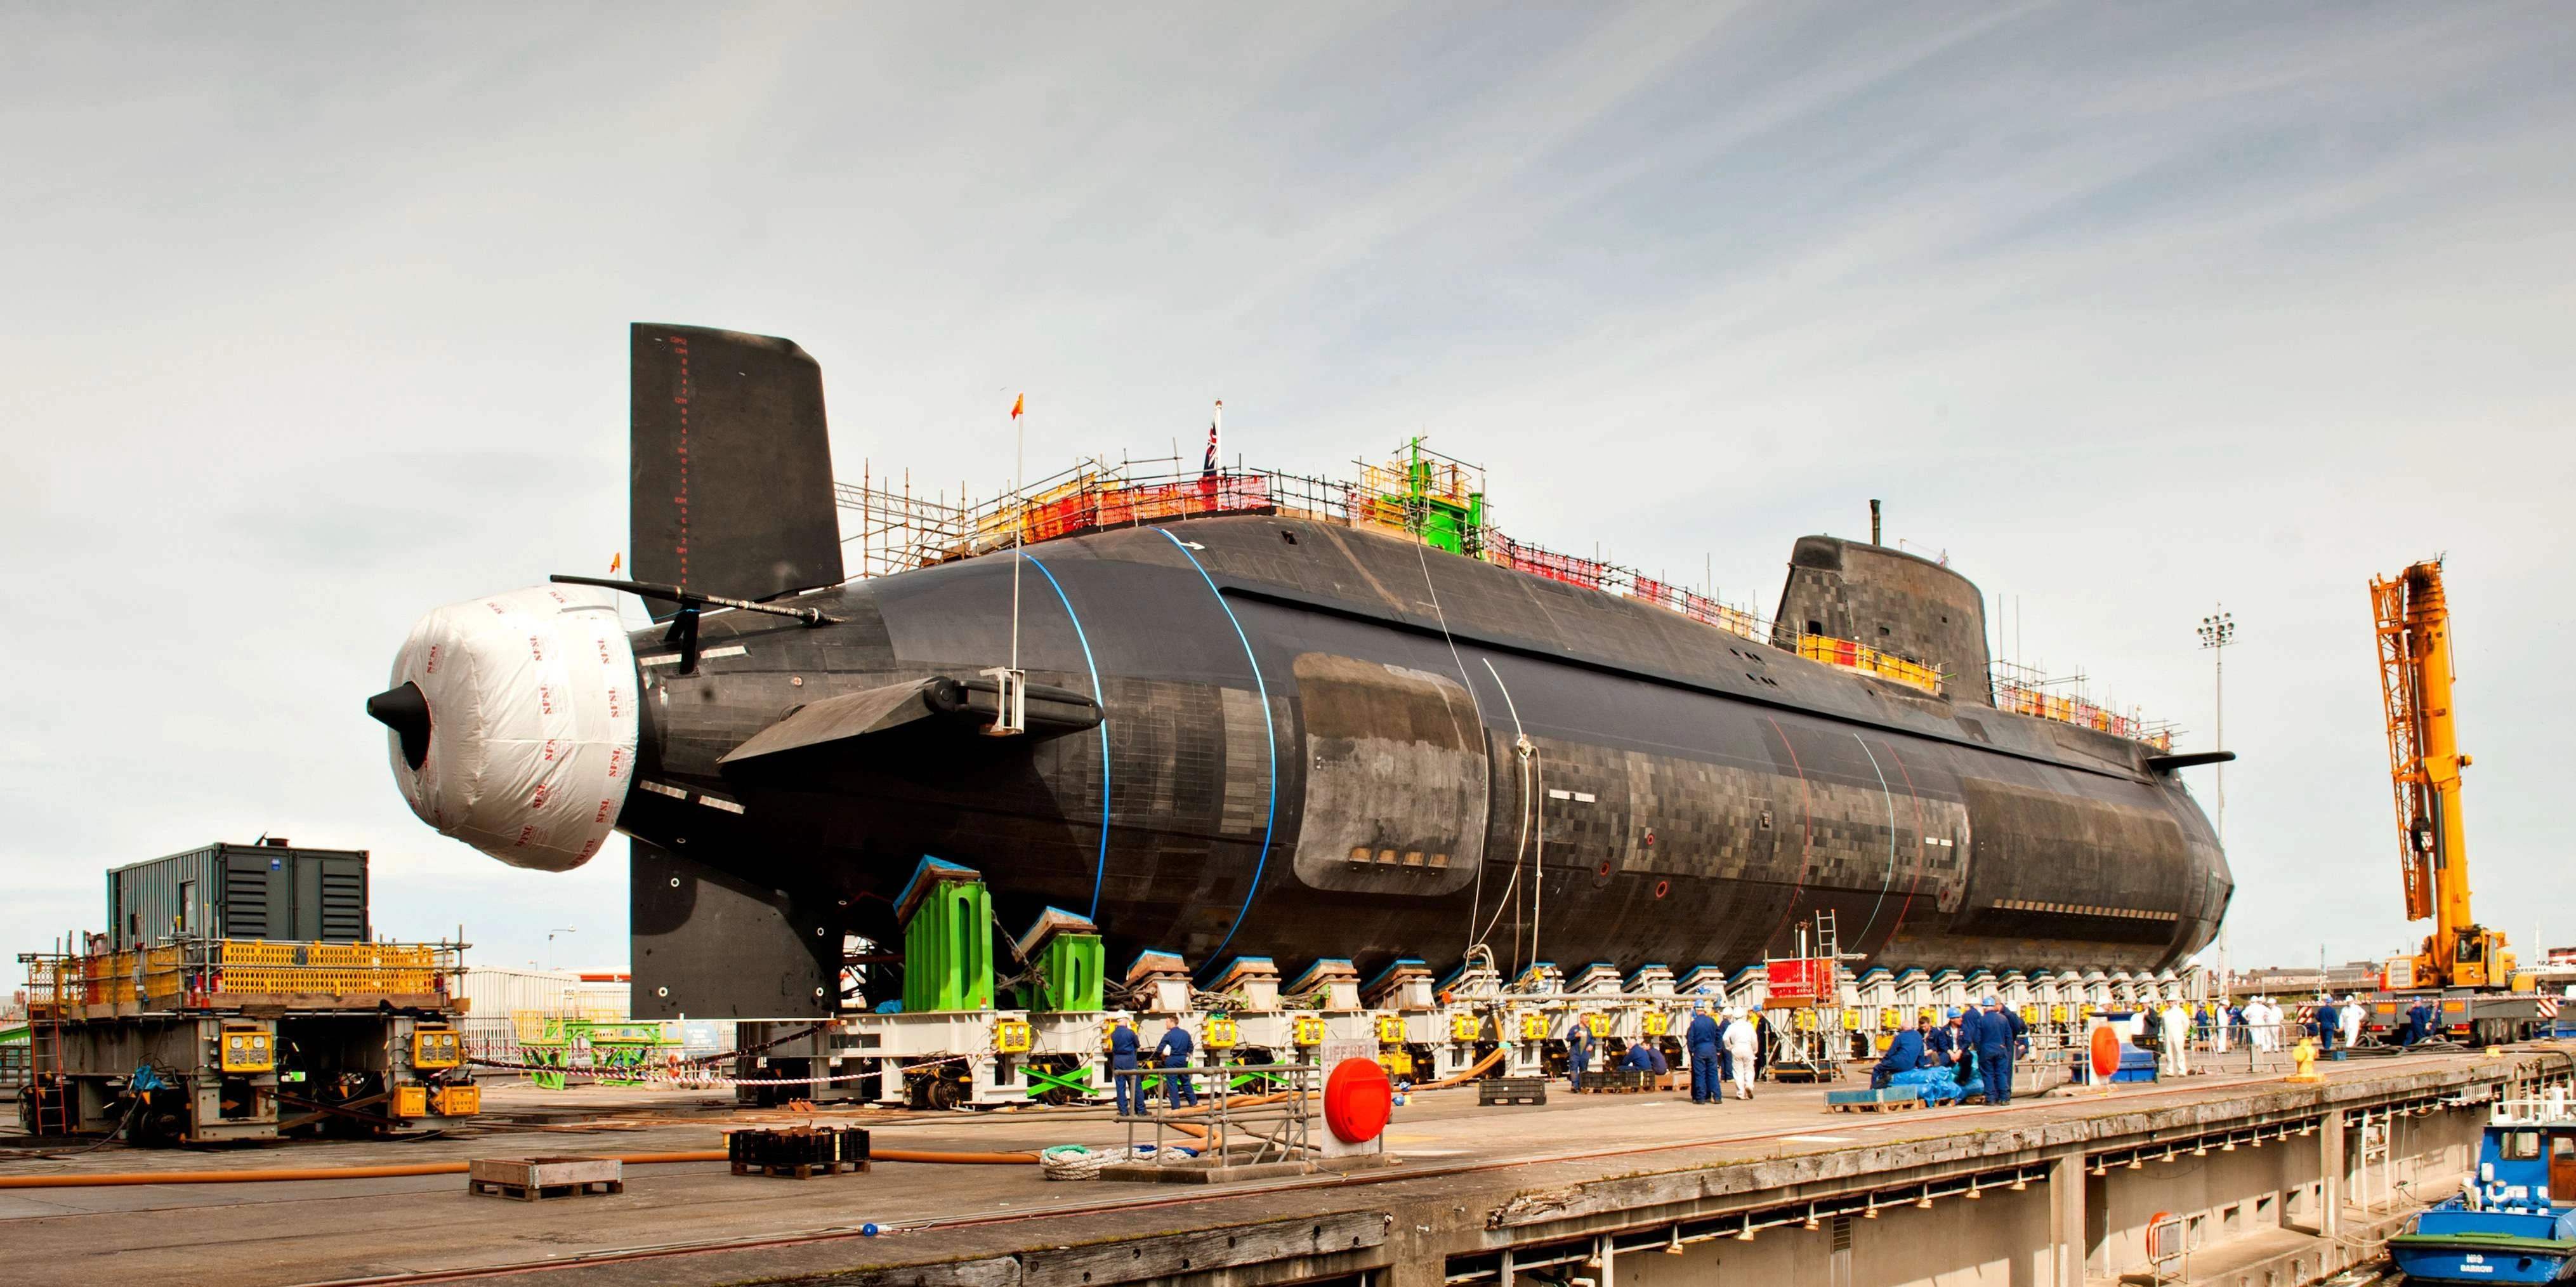 英国E级潜艇图片